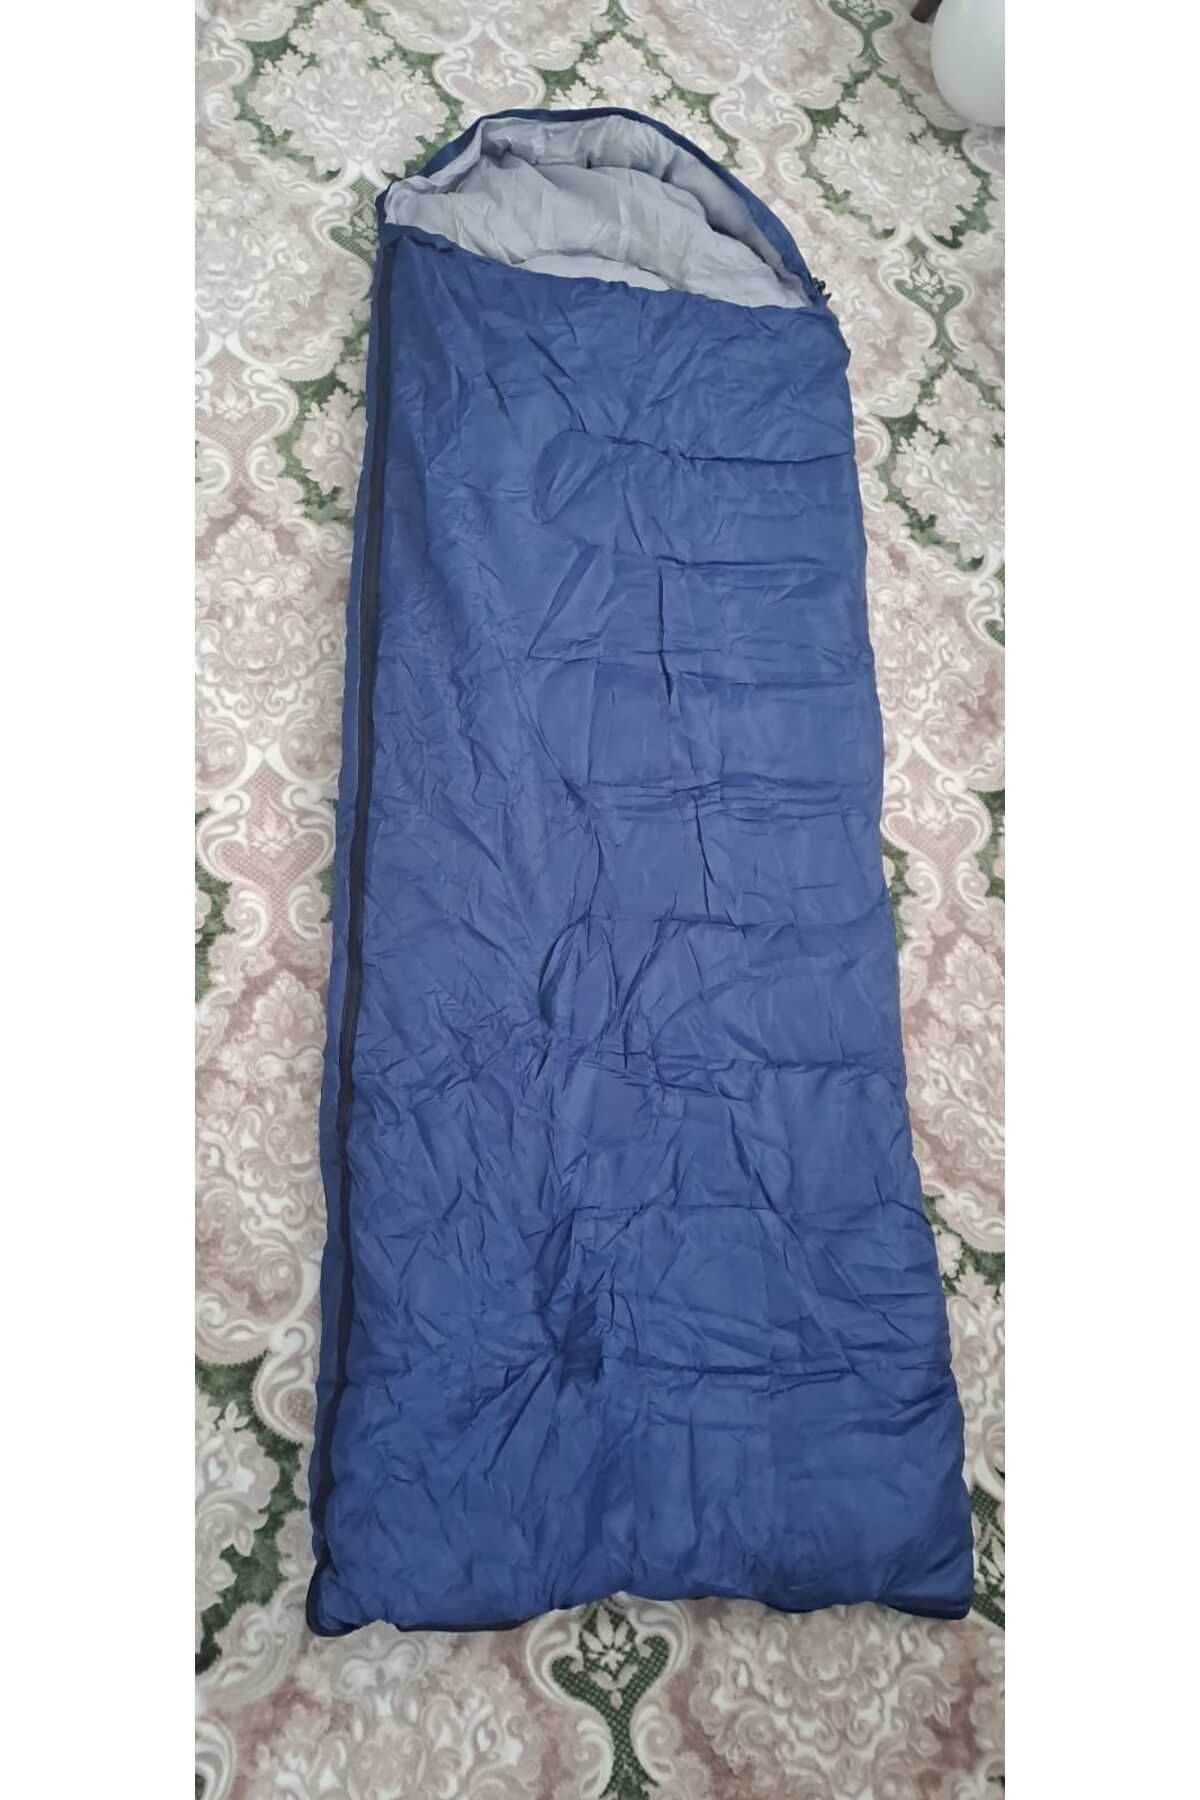 Butik Kamp Malzemeleri Düz başlık 180 25 cm lacivert  uyku tulumu